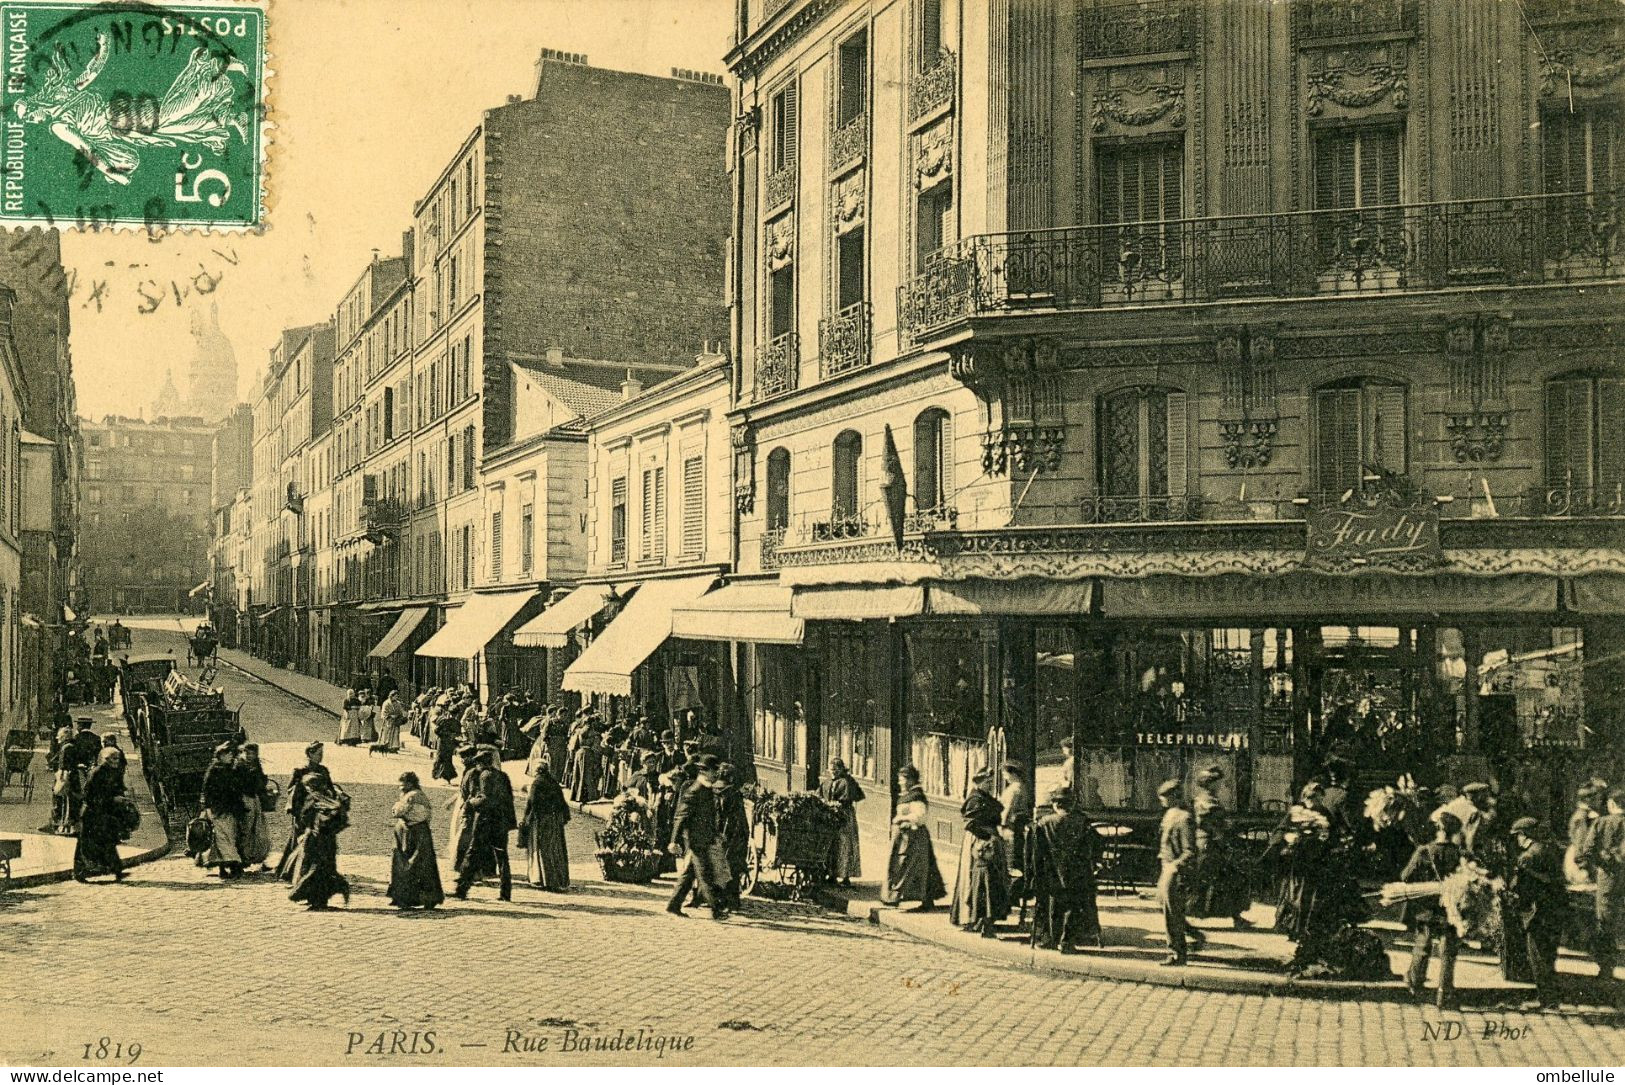 Paris - Rue Baudelique - District 18